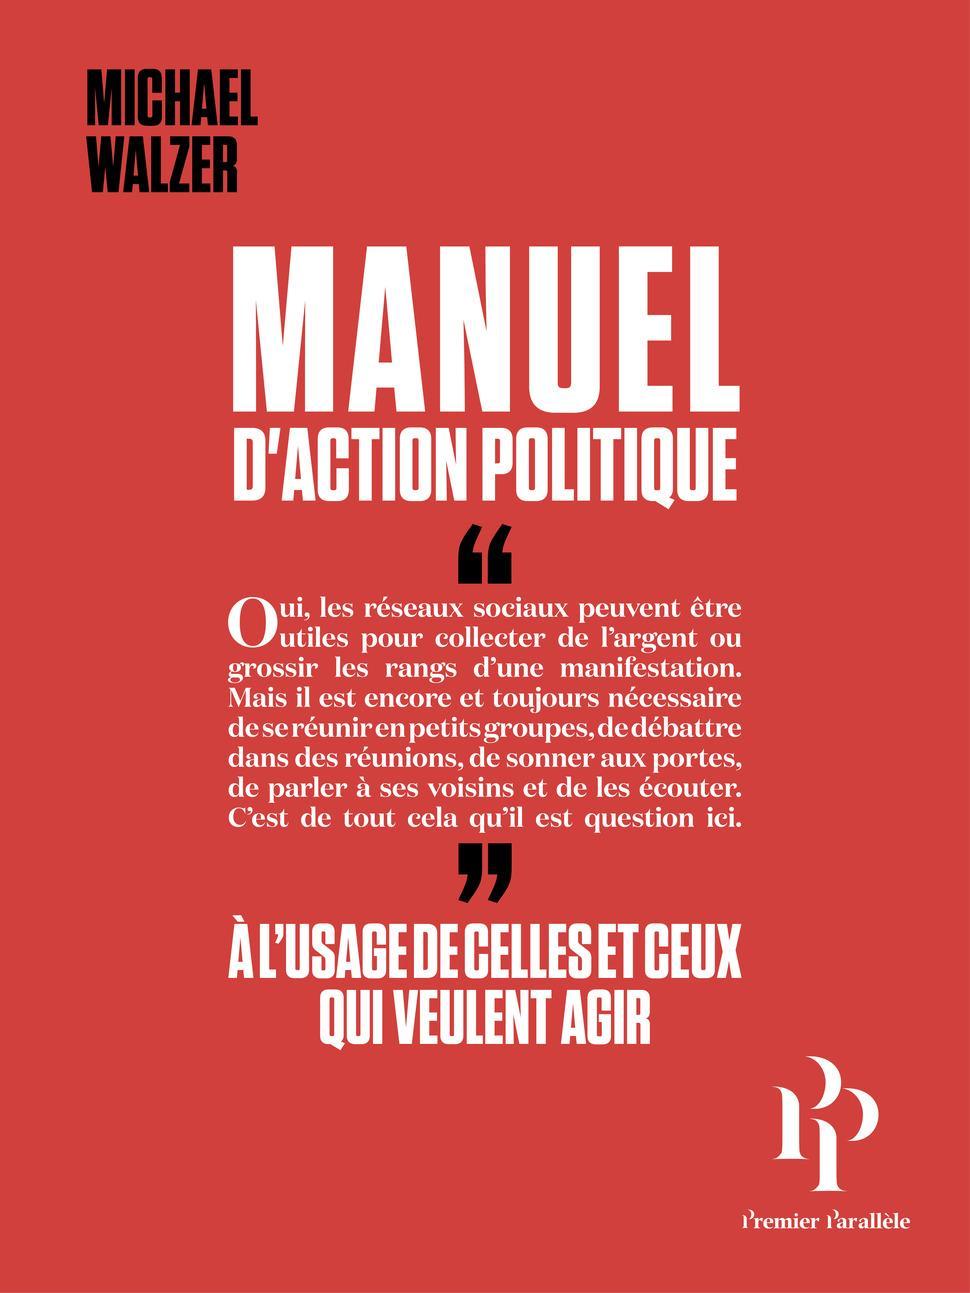 Michael Walzer: Manuel d'action politique (Paperback, French language, 2019, Premier Parallèle)